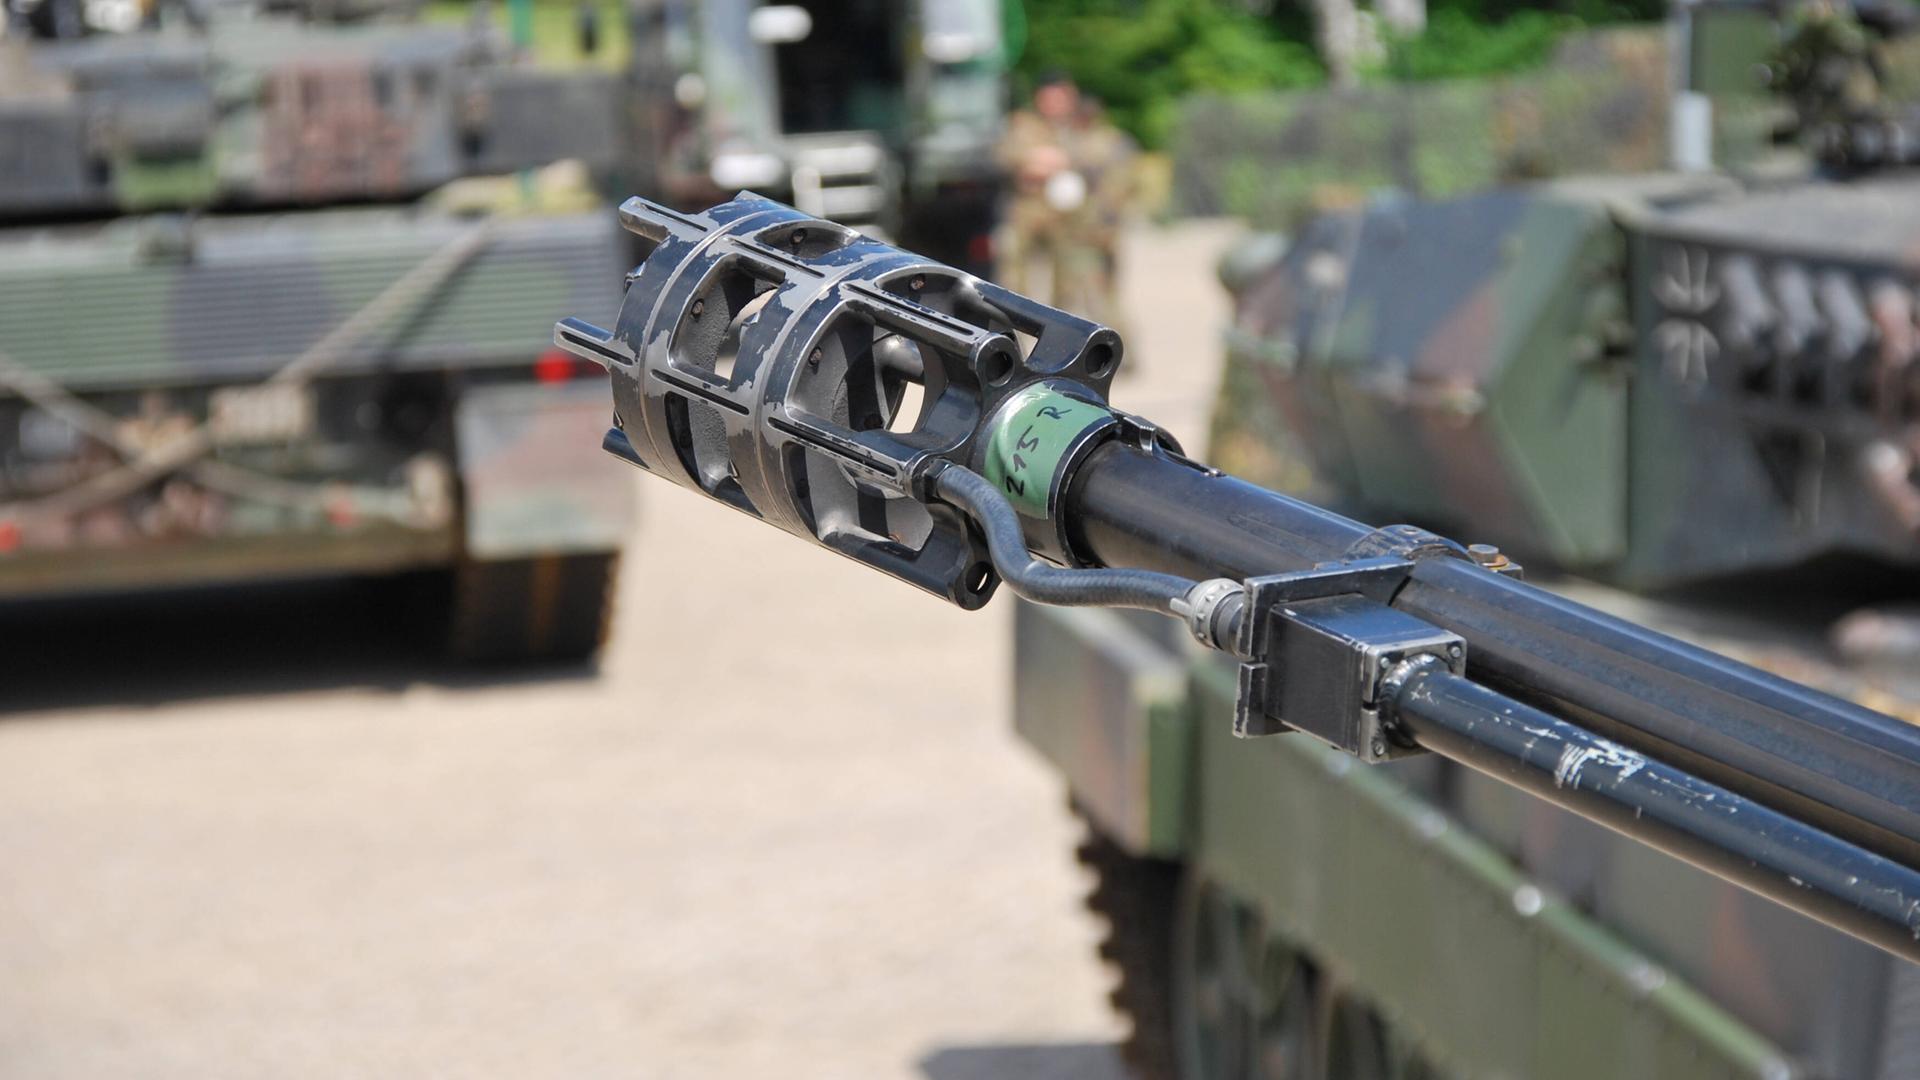 Die Schweiz hat ihr Veto gegen die Lieferung von Munition für den Flugabwehrkanonenpanzer Gepard gegeben - sie beruft sich auf ihre Nationalität. Deutschland will die Panzer an die Ukraine liefern.